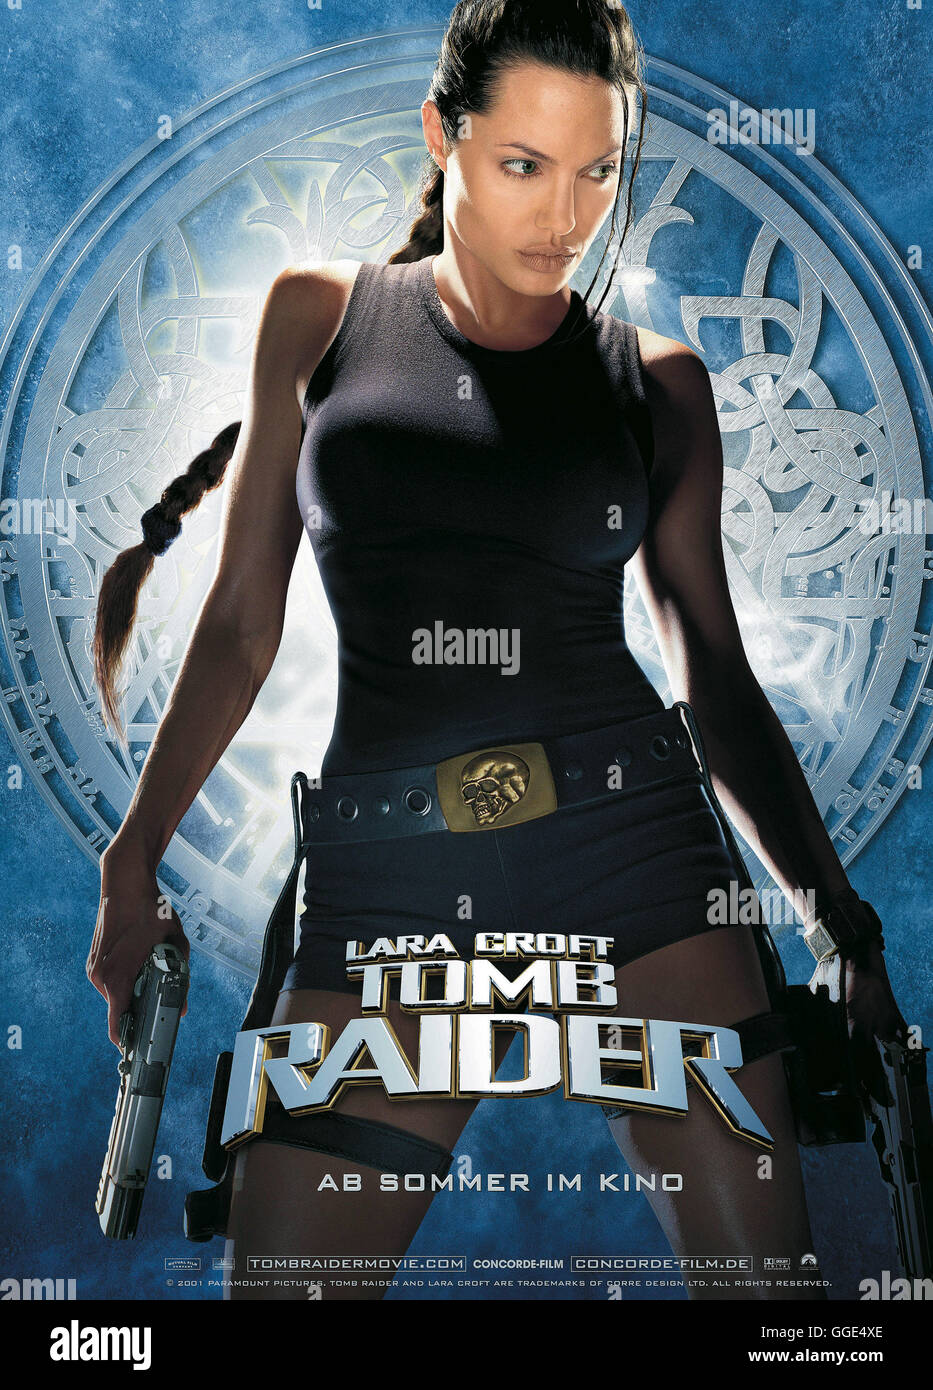 LARA CROFT - TOMB RAIDER / Lara Croft - Tomb Raider USA 2000 / Simon West sterben Archäologin Lara Croft (ANGELINA JOLIE) Wird Duch Ein Ungewohntes Ticken Wach. Sie Entdeckt in Ihrer Villa Eine Geheimnisvolle Uhr. Sie Entdeckt, Daß Die Uhr der Schlüssel Zu Dem Allsehenden Auge, Einem Relikt aus Grauer Vorzeit, ist. Füttere Sie Dabei ist, Das Rätsel Zu Lösen, Heften Sich Zwielichtige Gestalten an Ihre Fersen. So Auch der Rechtsanwalt Powell Und der Schatzjäger Alex Marss. Wer Immer Im Besitz des Allsehenden Auges ist, Erhält Macht Über Die Zeit Und Damit Über konzentrierte, Gegenwart und Stockfoto